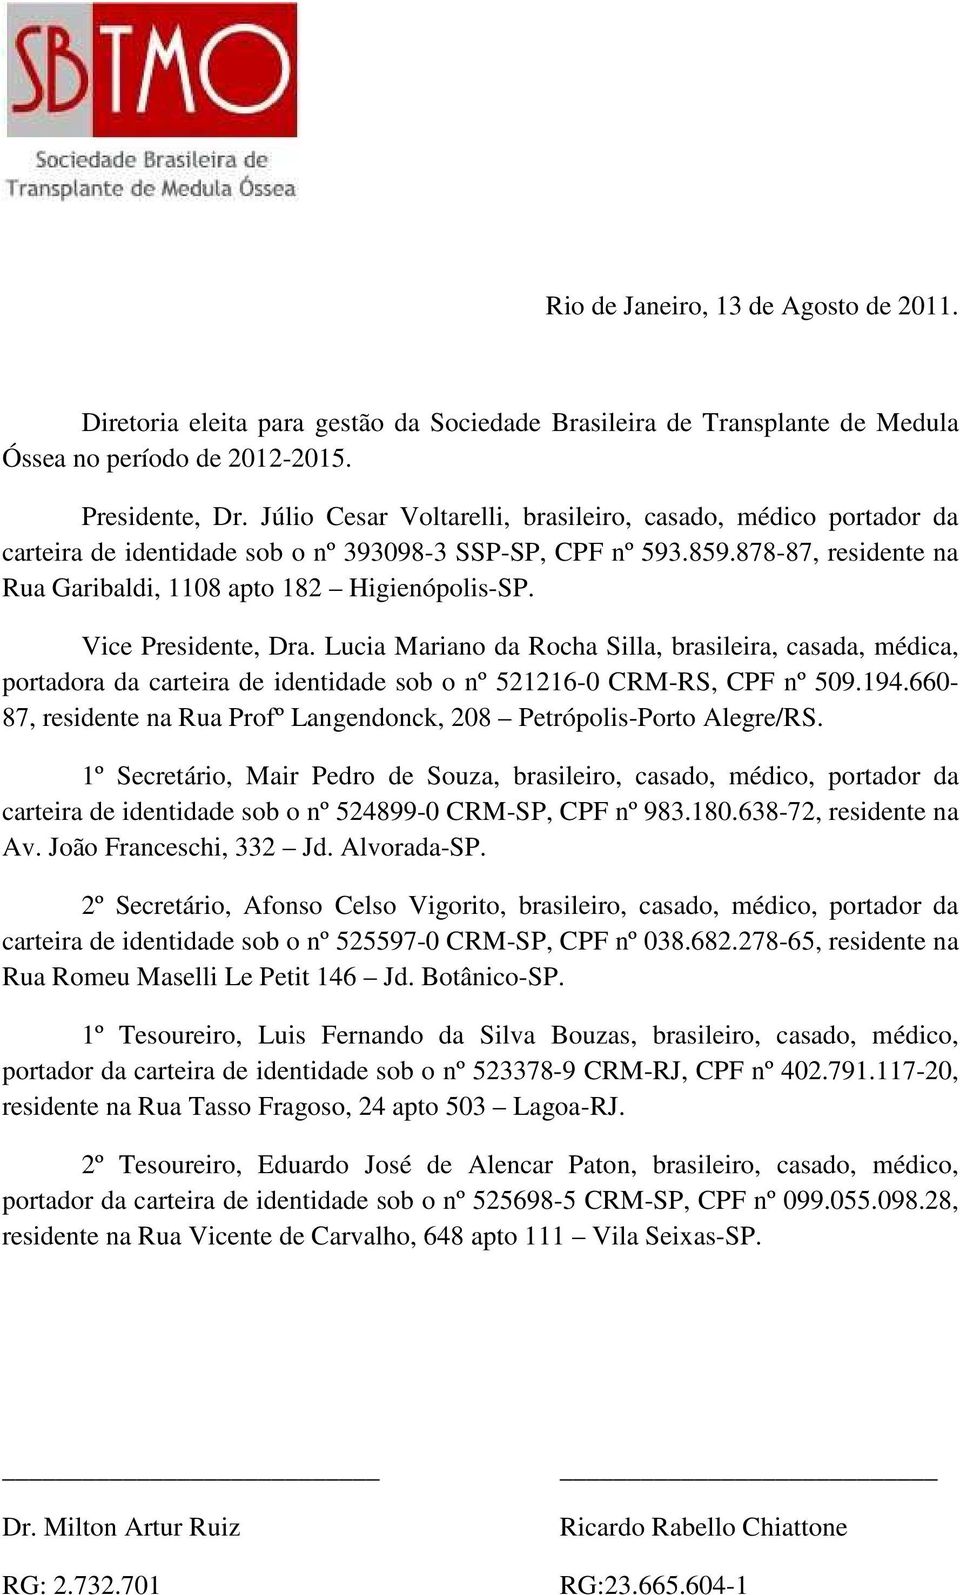 Vice Presidente, Dra. Lucia Mariano da Rocha Silla, brasileira, casada, médica, portadora da carteira de identidade sob o nº 521216-0 CRM-RS, CPF nº 509.194.